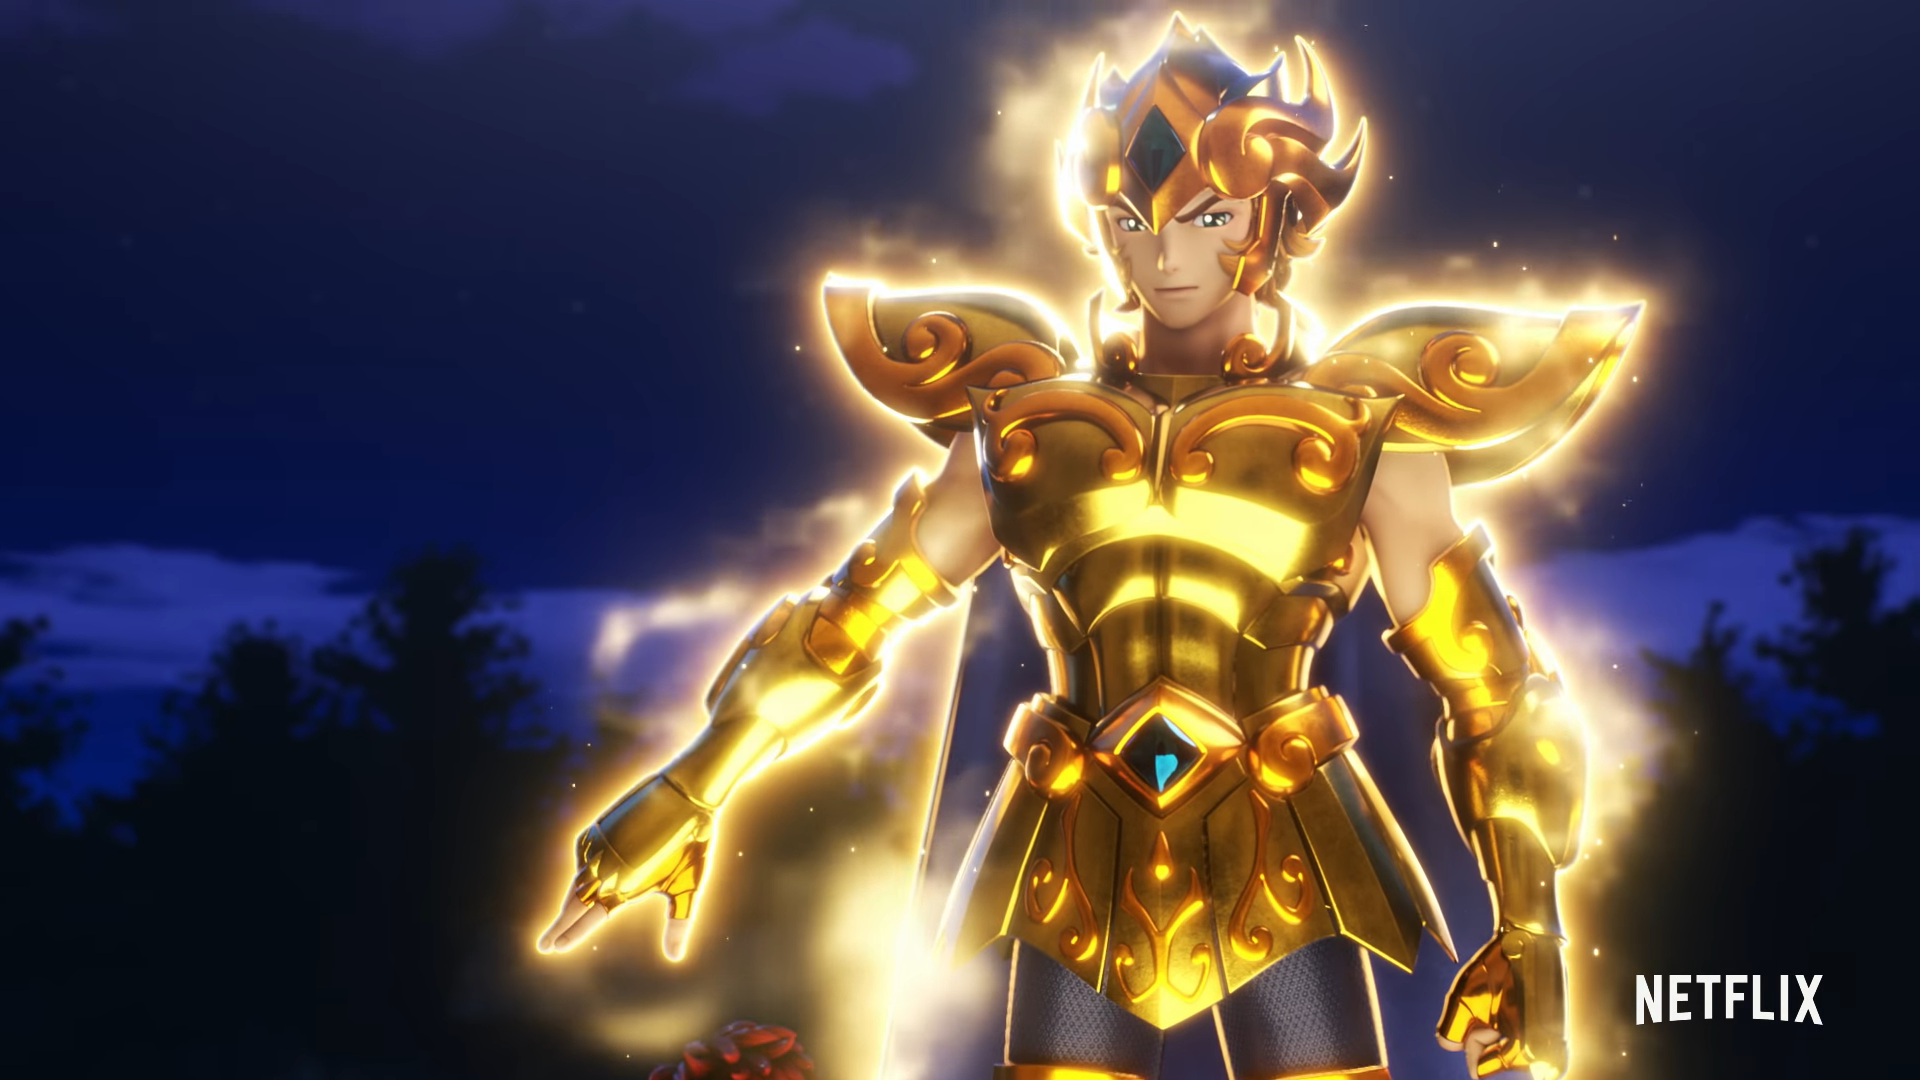 Saint Seiya Knights of the Zodiac Trailer, Netflix Anime, Netflix Animation, Netflix Trailers